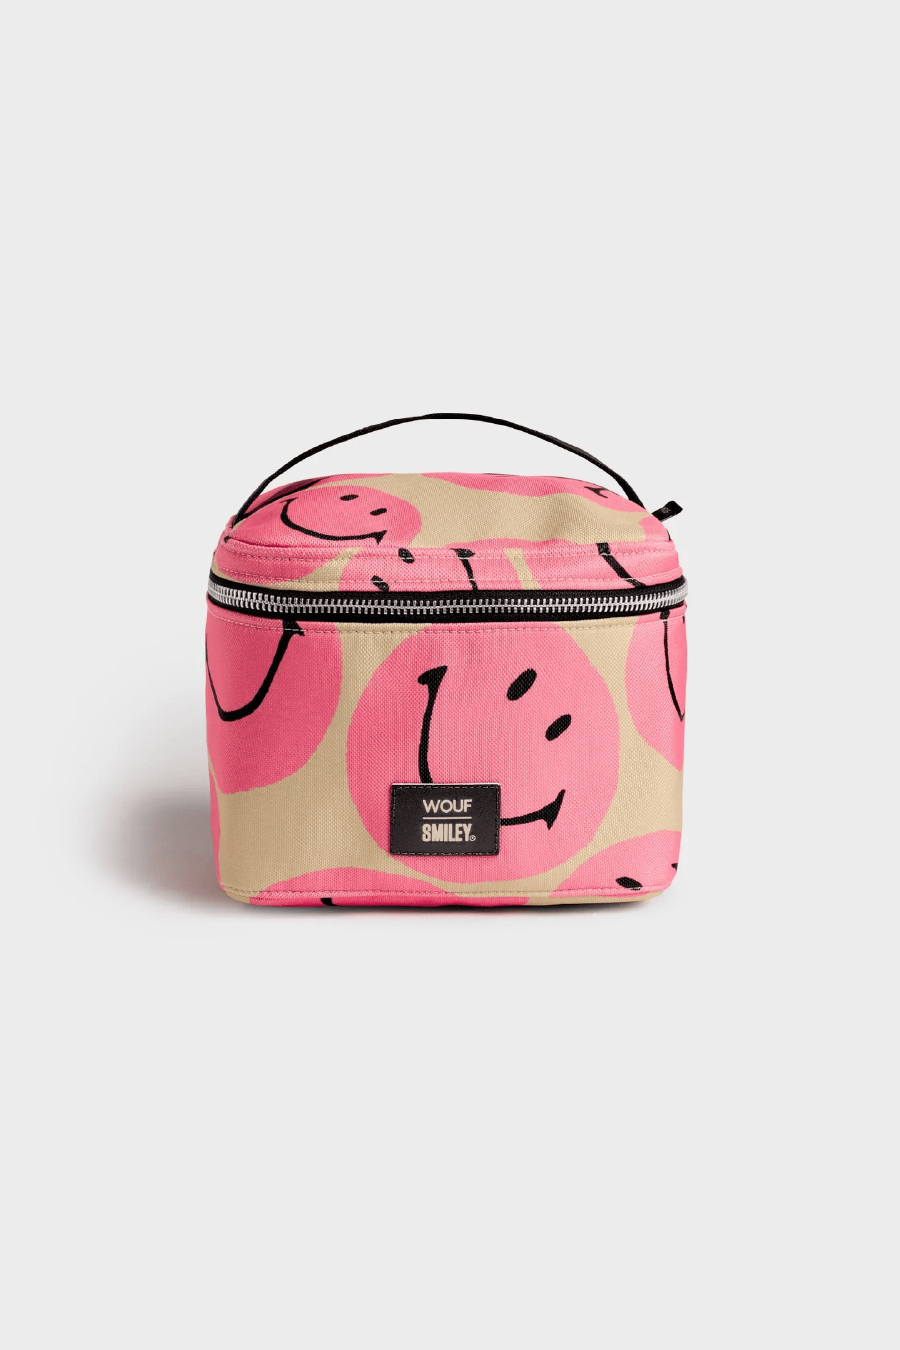 Smiley Pink Vanity Bag-XL Makyaj Çantası